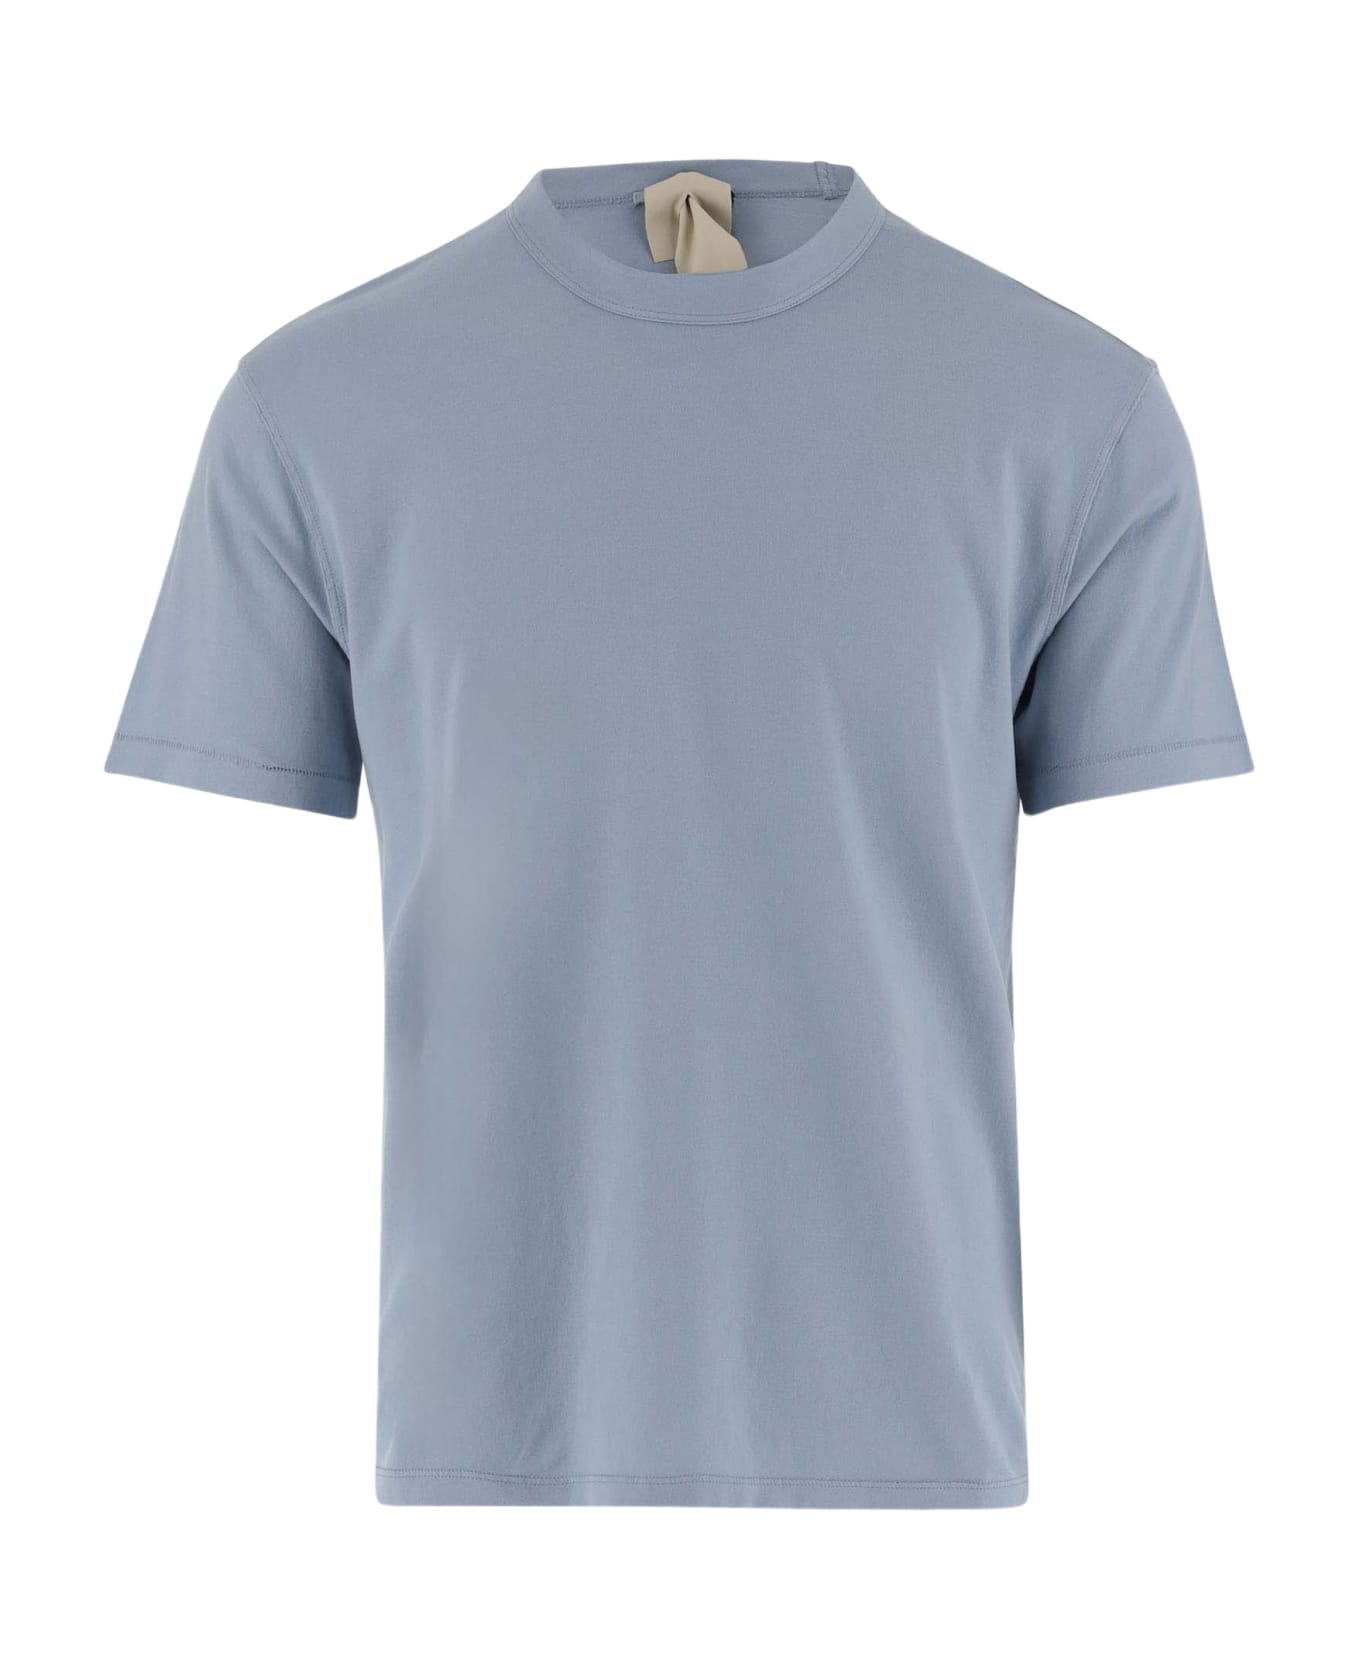 Ten C Cotton T-shirt With Logo - Light Blue